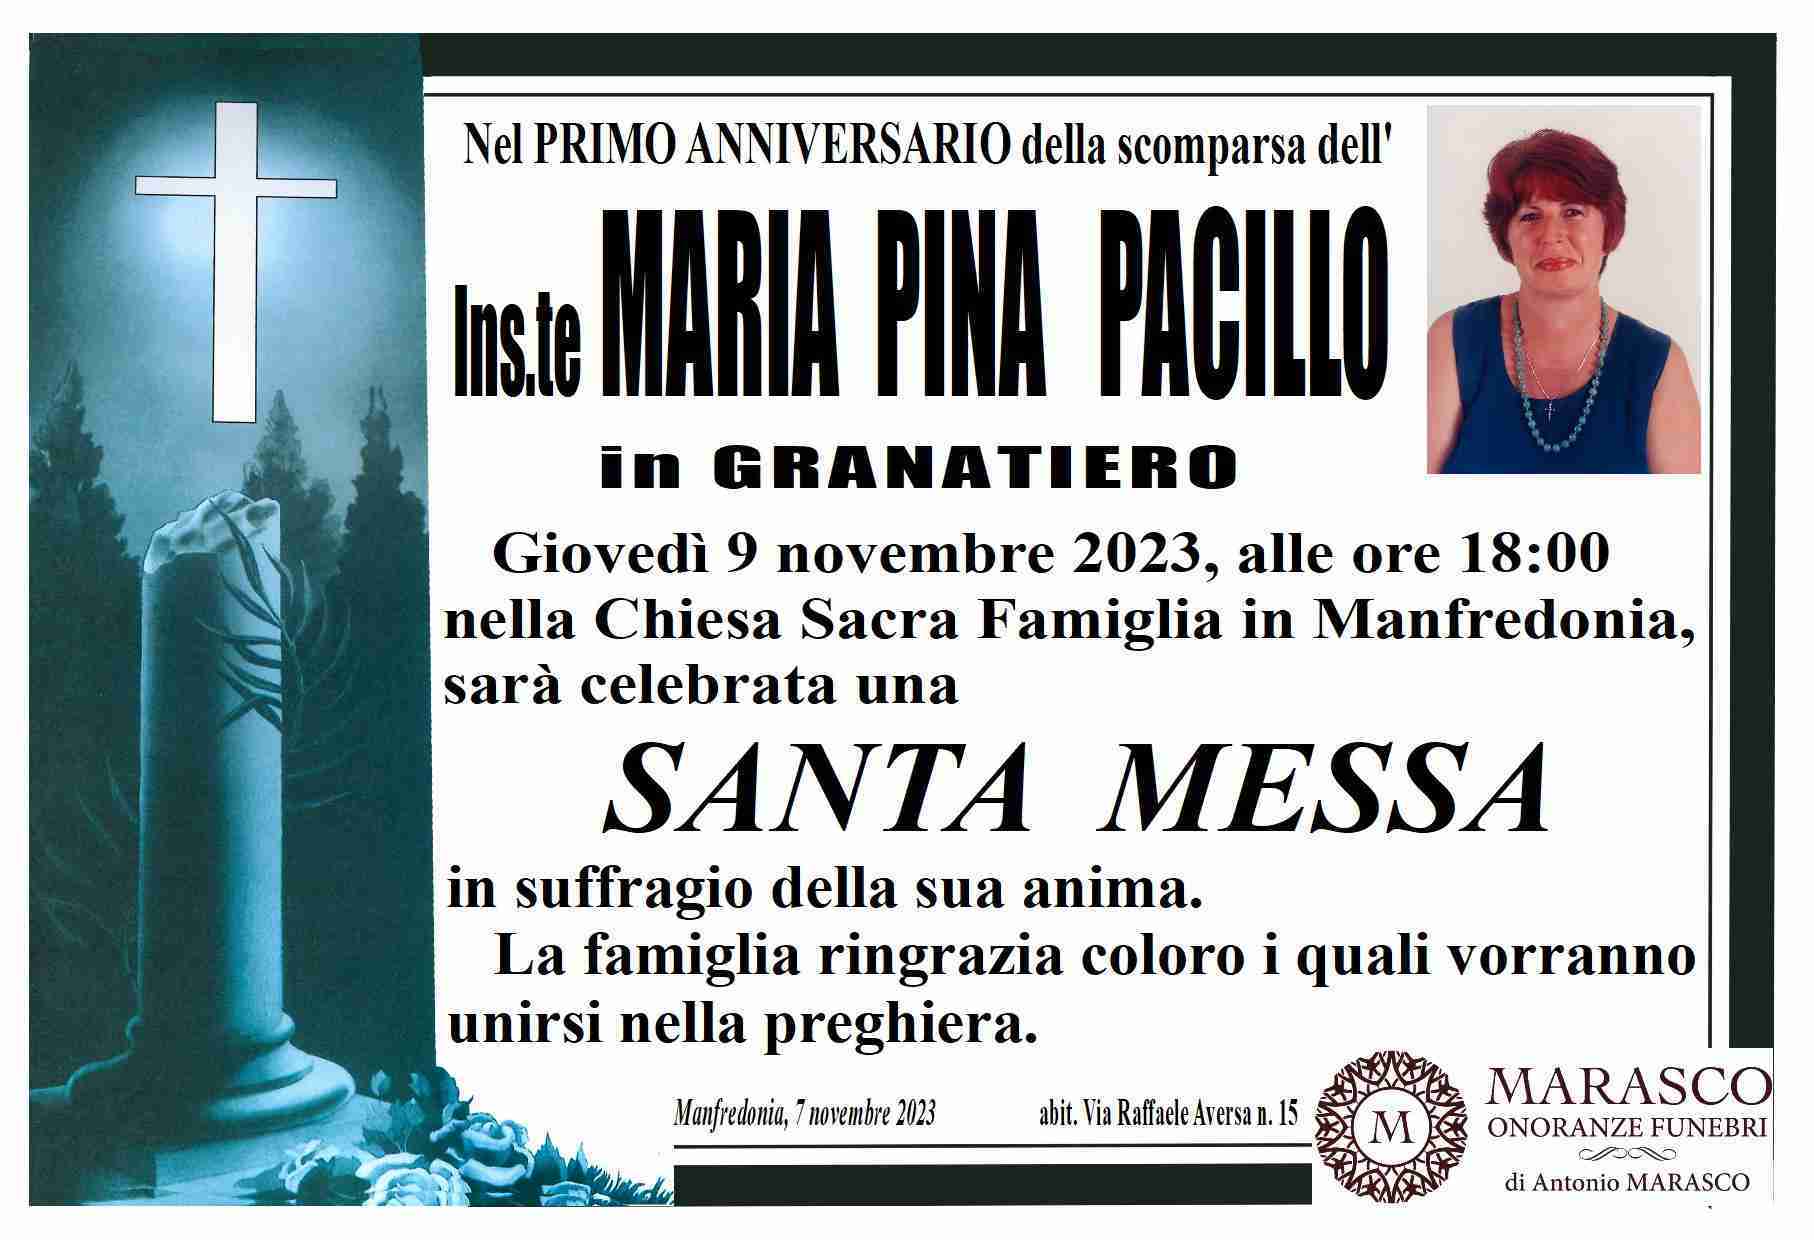 Maria Pina Pacillo